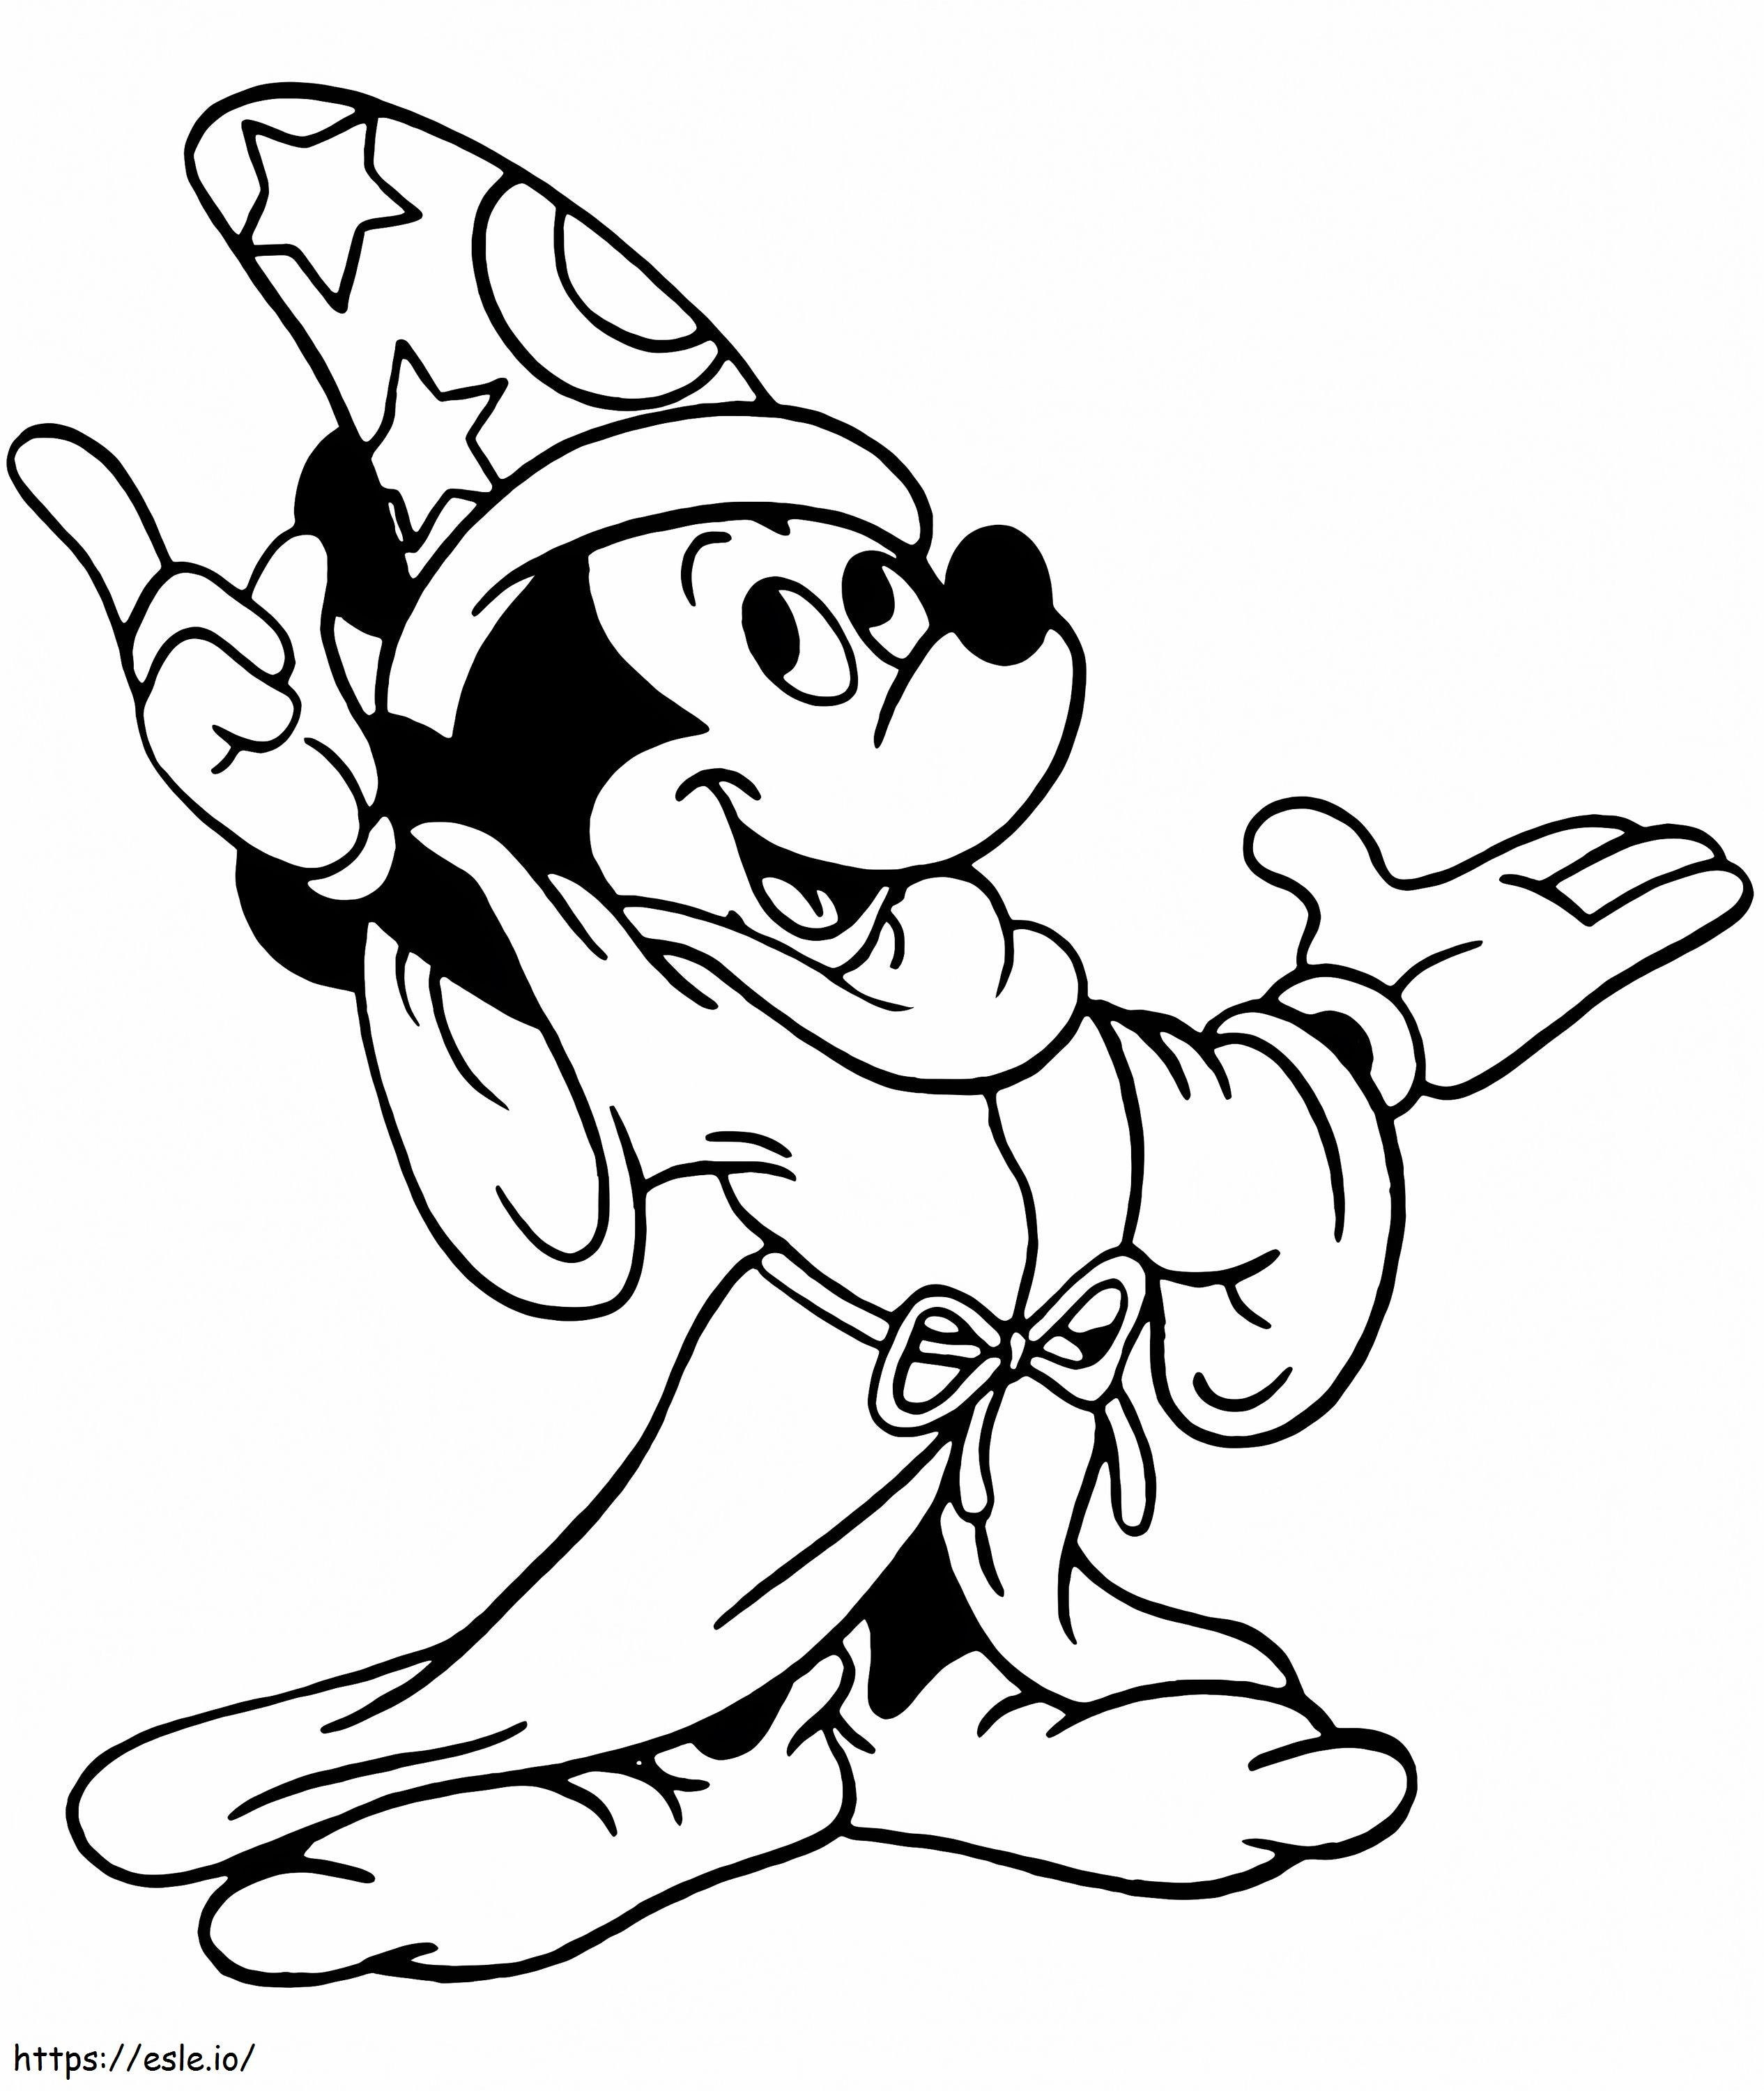 Mickey-Mouse-Zauberer ausmalbilder